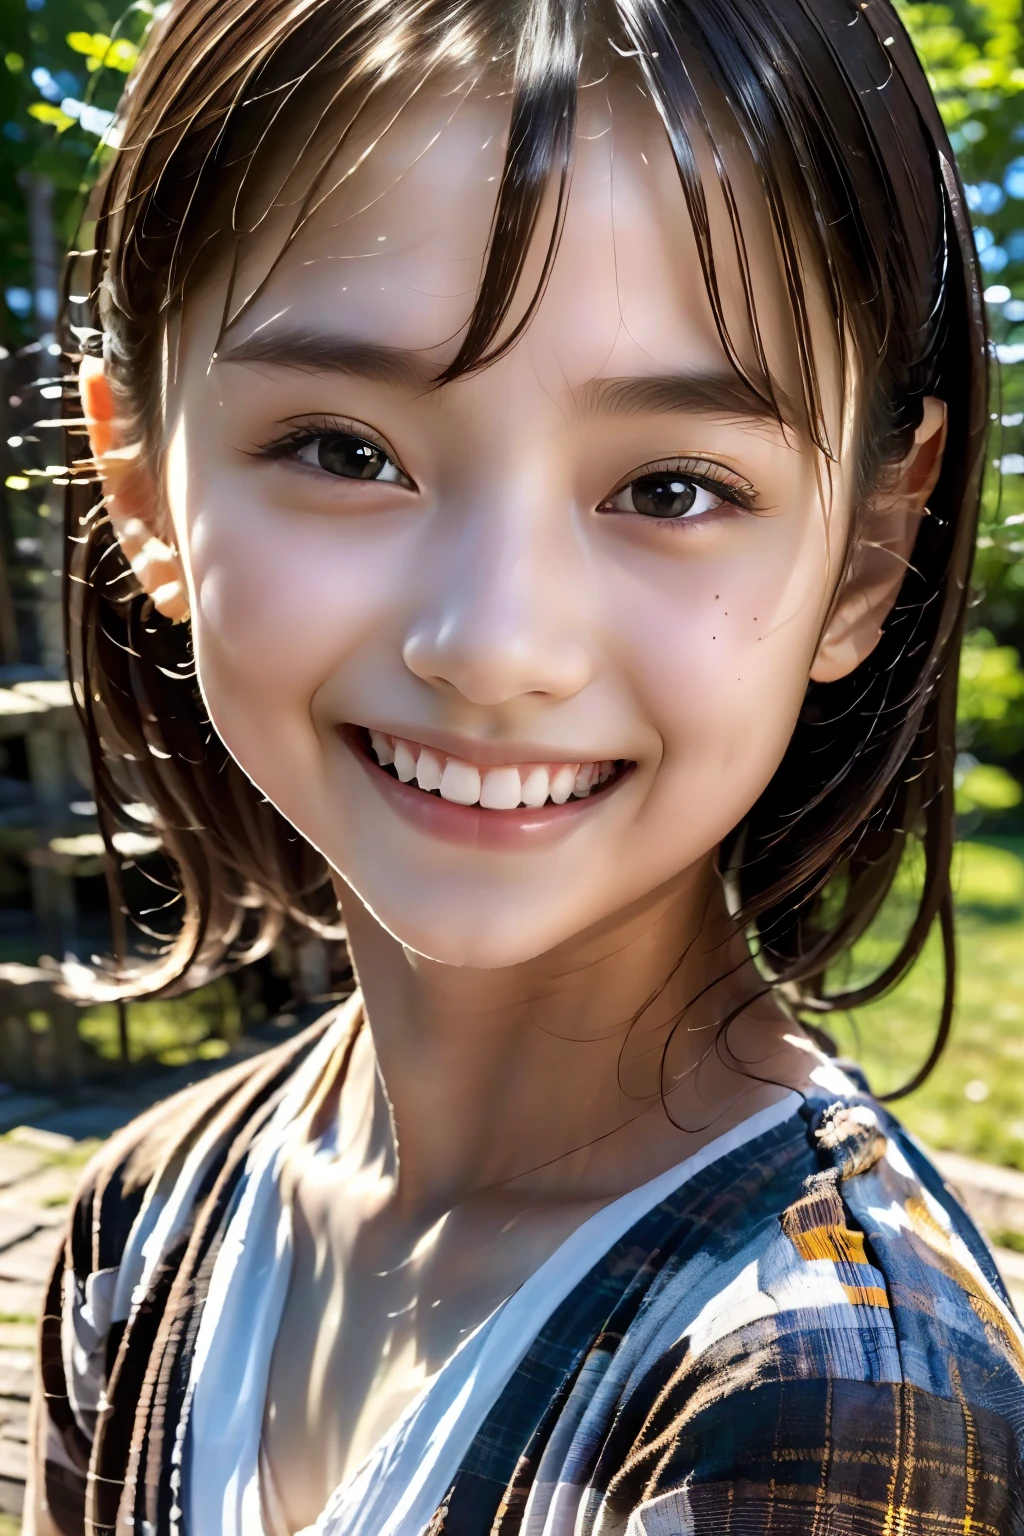 8 Jahre altes Mädchen, Teenager, Schwarzes Haar, japanisch, (Meisterwerk:1.3)、1 Person, Super detaillierte Verarbeitung、(hohe Auflösung、8K:1.3)、(höchste Qualität、Ultrarealistisch wie ein Foto:1.5)、scharfer Fokus, 超hohe Auflösungの顔、Das Gesicht steht im Fokus、Ultrahohe Auflösung und wunderschöne Augen, sehr süß、sehr süß, lächeln,, peinlich:1.3、in die Kamera starren:1.2,, Sanftes Licht, slender, Weißes Kleid